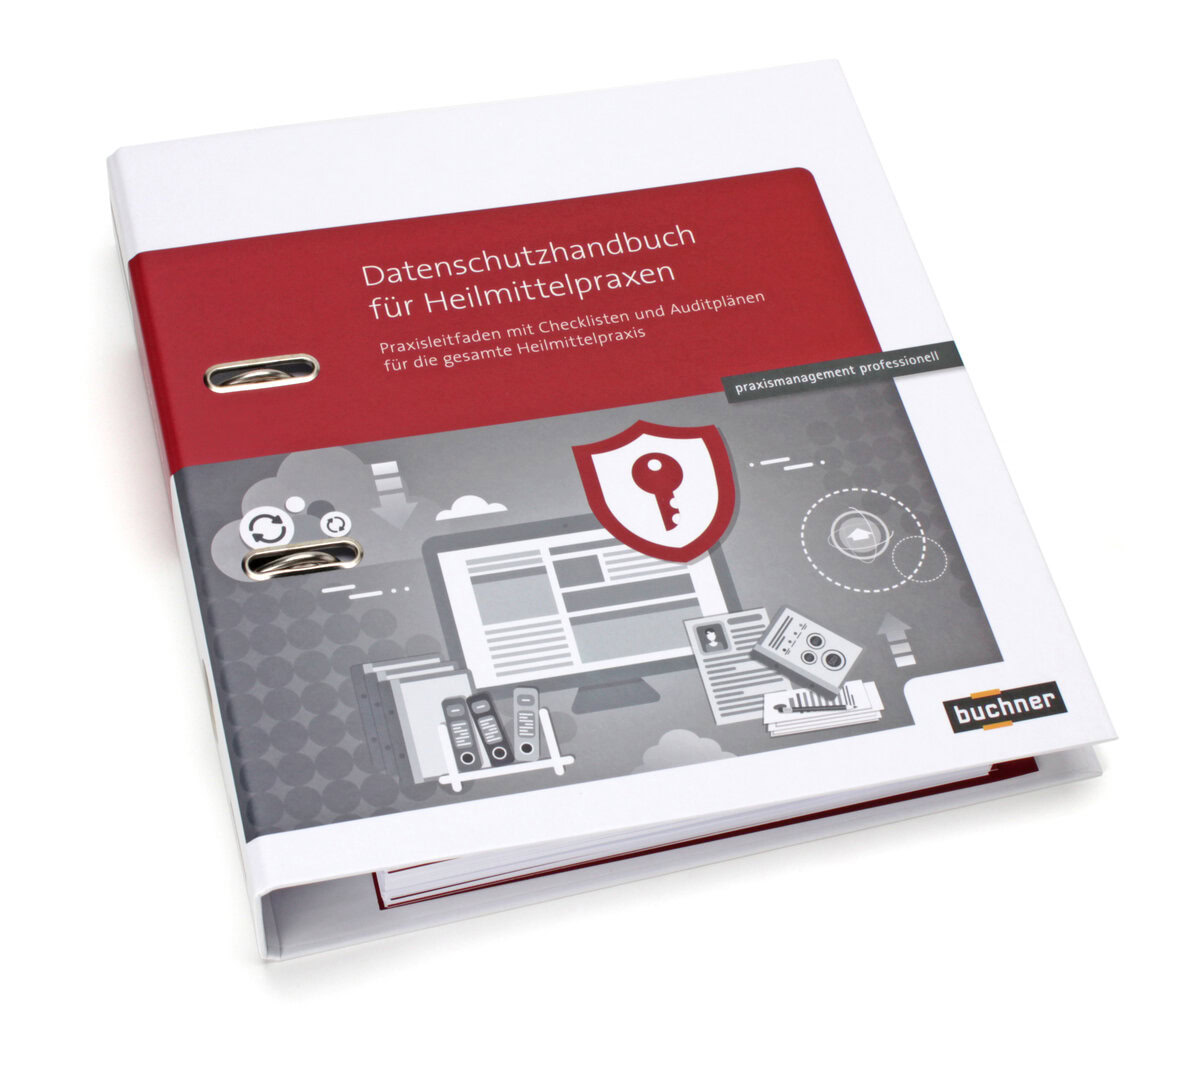 Datenschutzhandbuch speziell für die Heilmittelpraxis